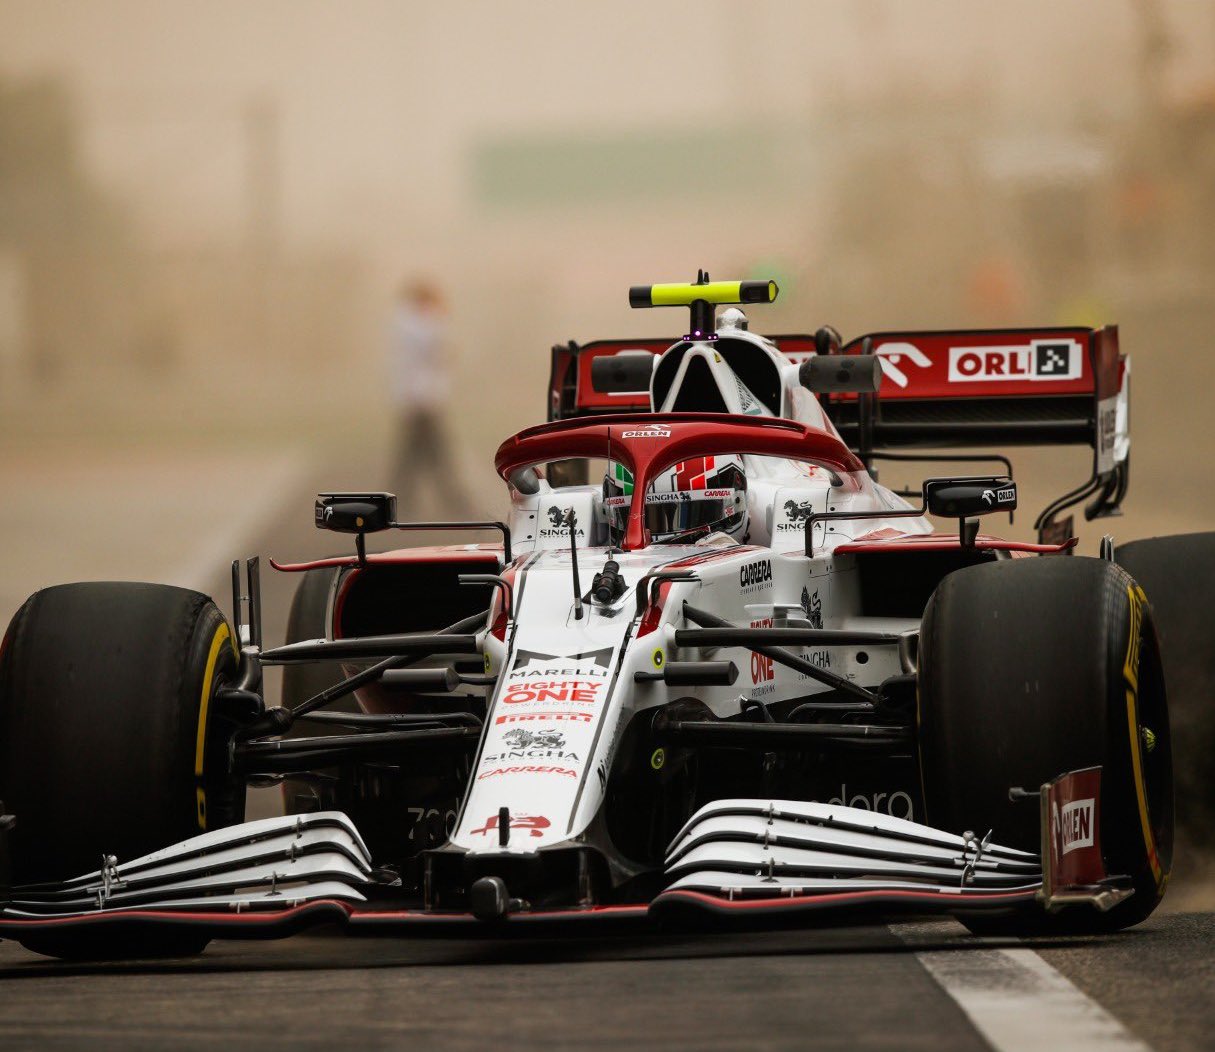 阿尔法罗密欧的2021 F1赛车在季前测试。